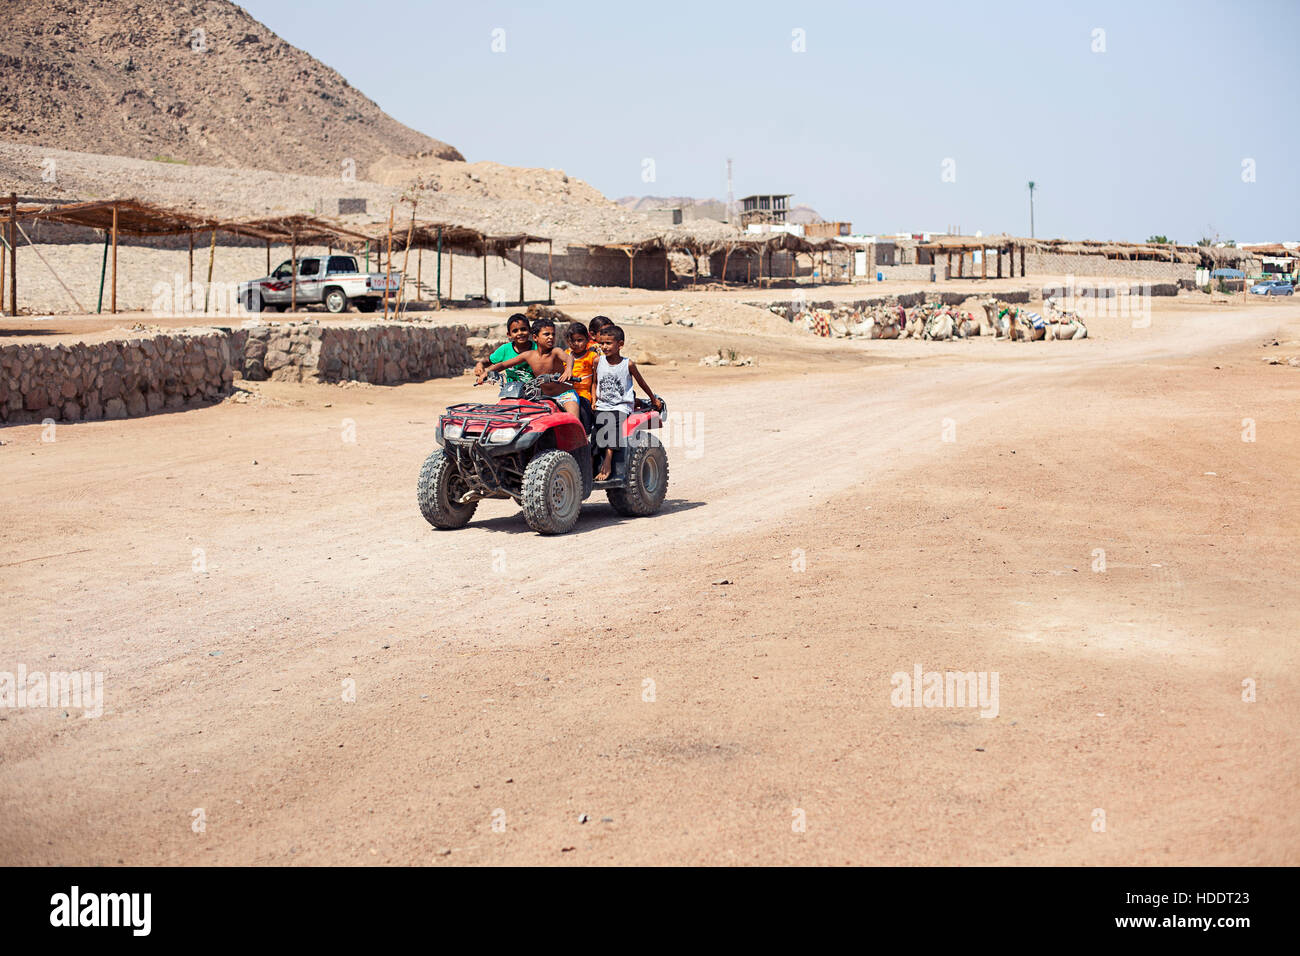 Egitto Sharm el sheikh - agosto 2016: gli egiziani bambini ride su di una moto quad. Deserto Foto Stock